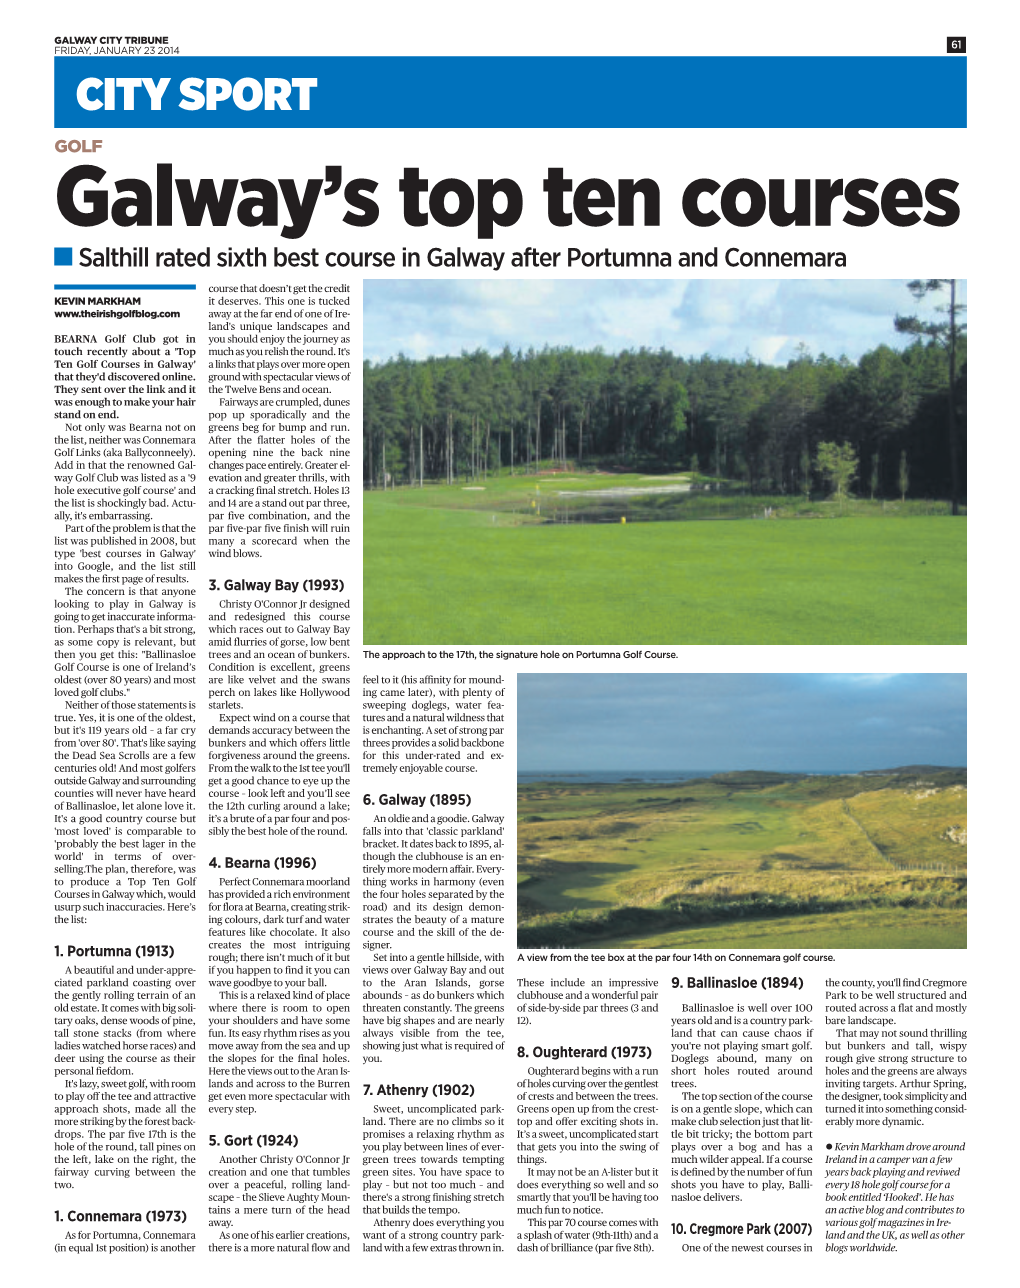 Galway's Top Ten Courses